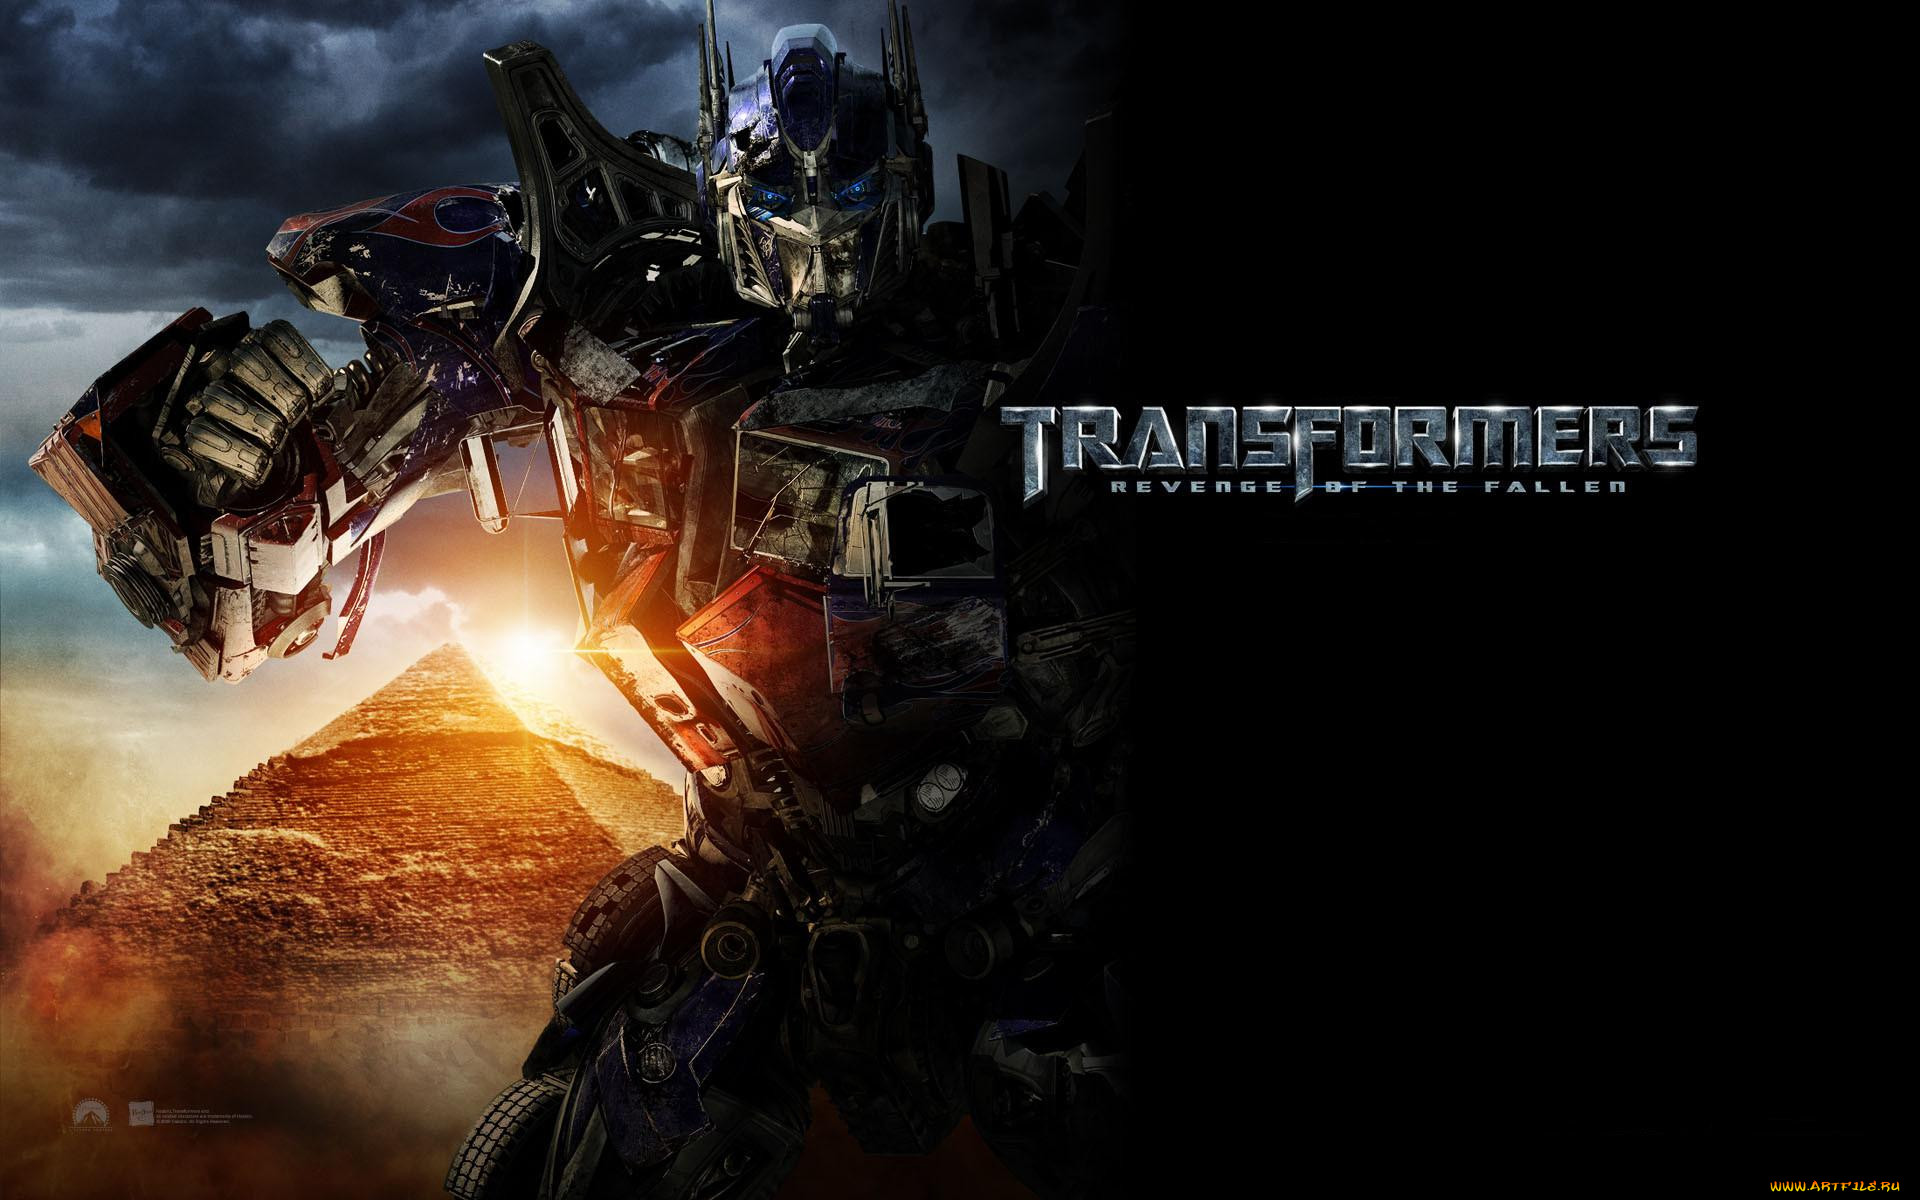  , transformers 2,  revenge of the fallen, , , 